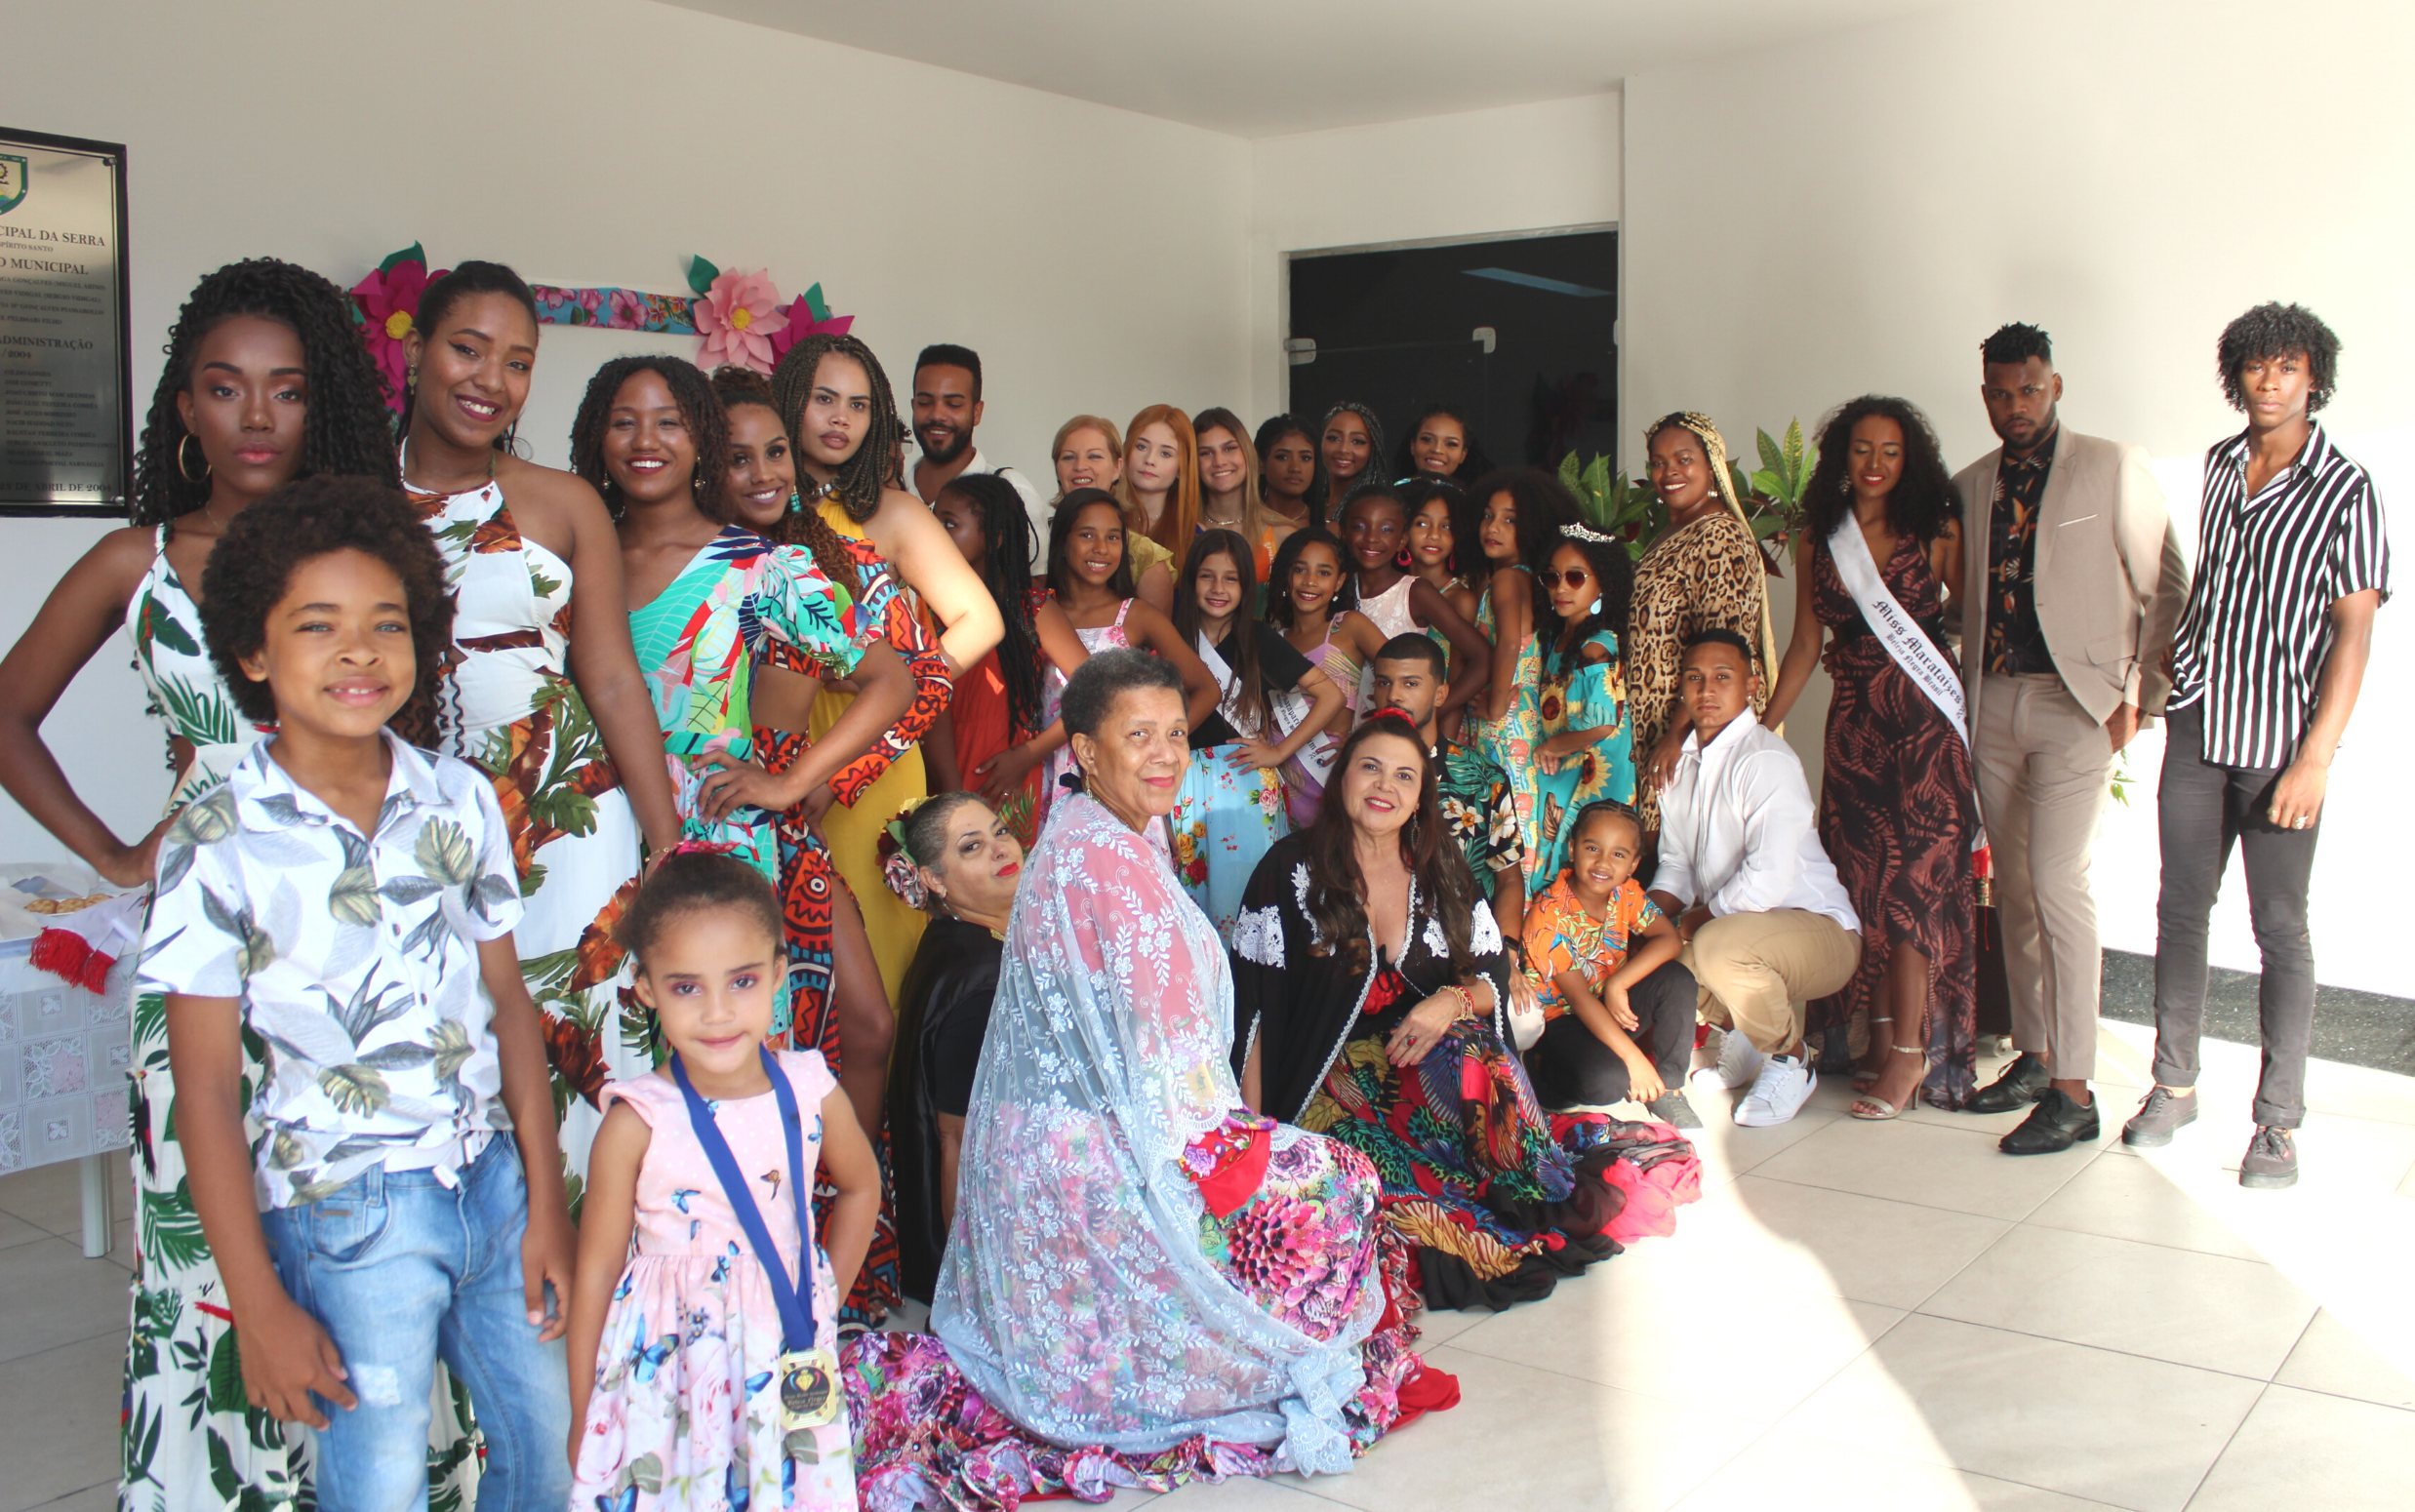 Candidatos de concurso de beleza negra recebem homenagem na Câmara Municipal da Serra.